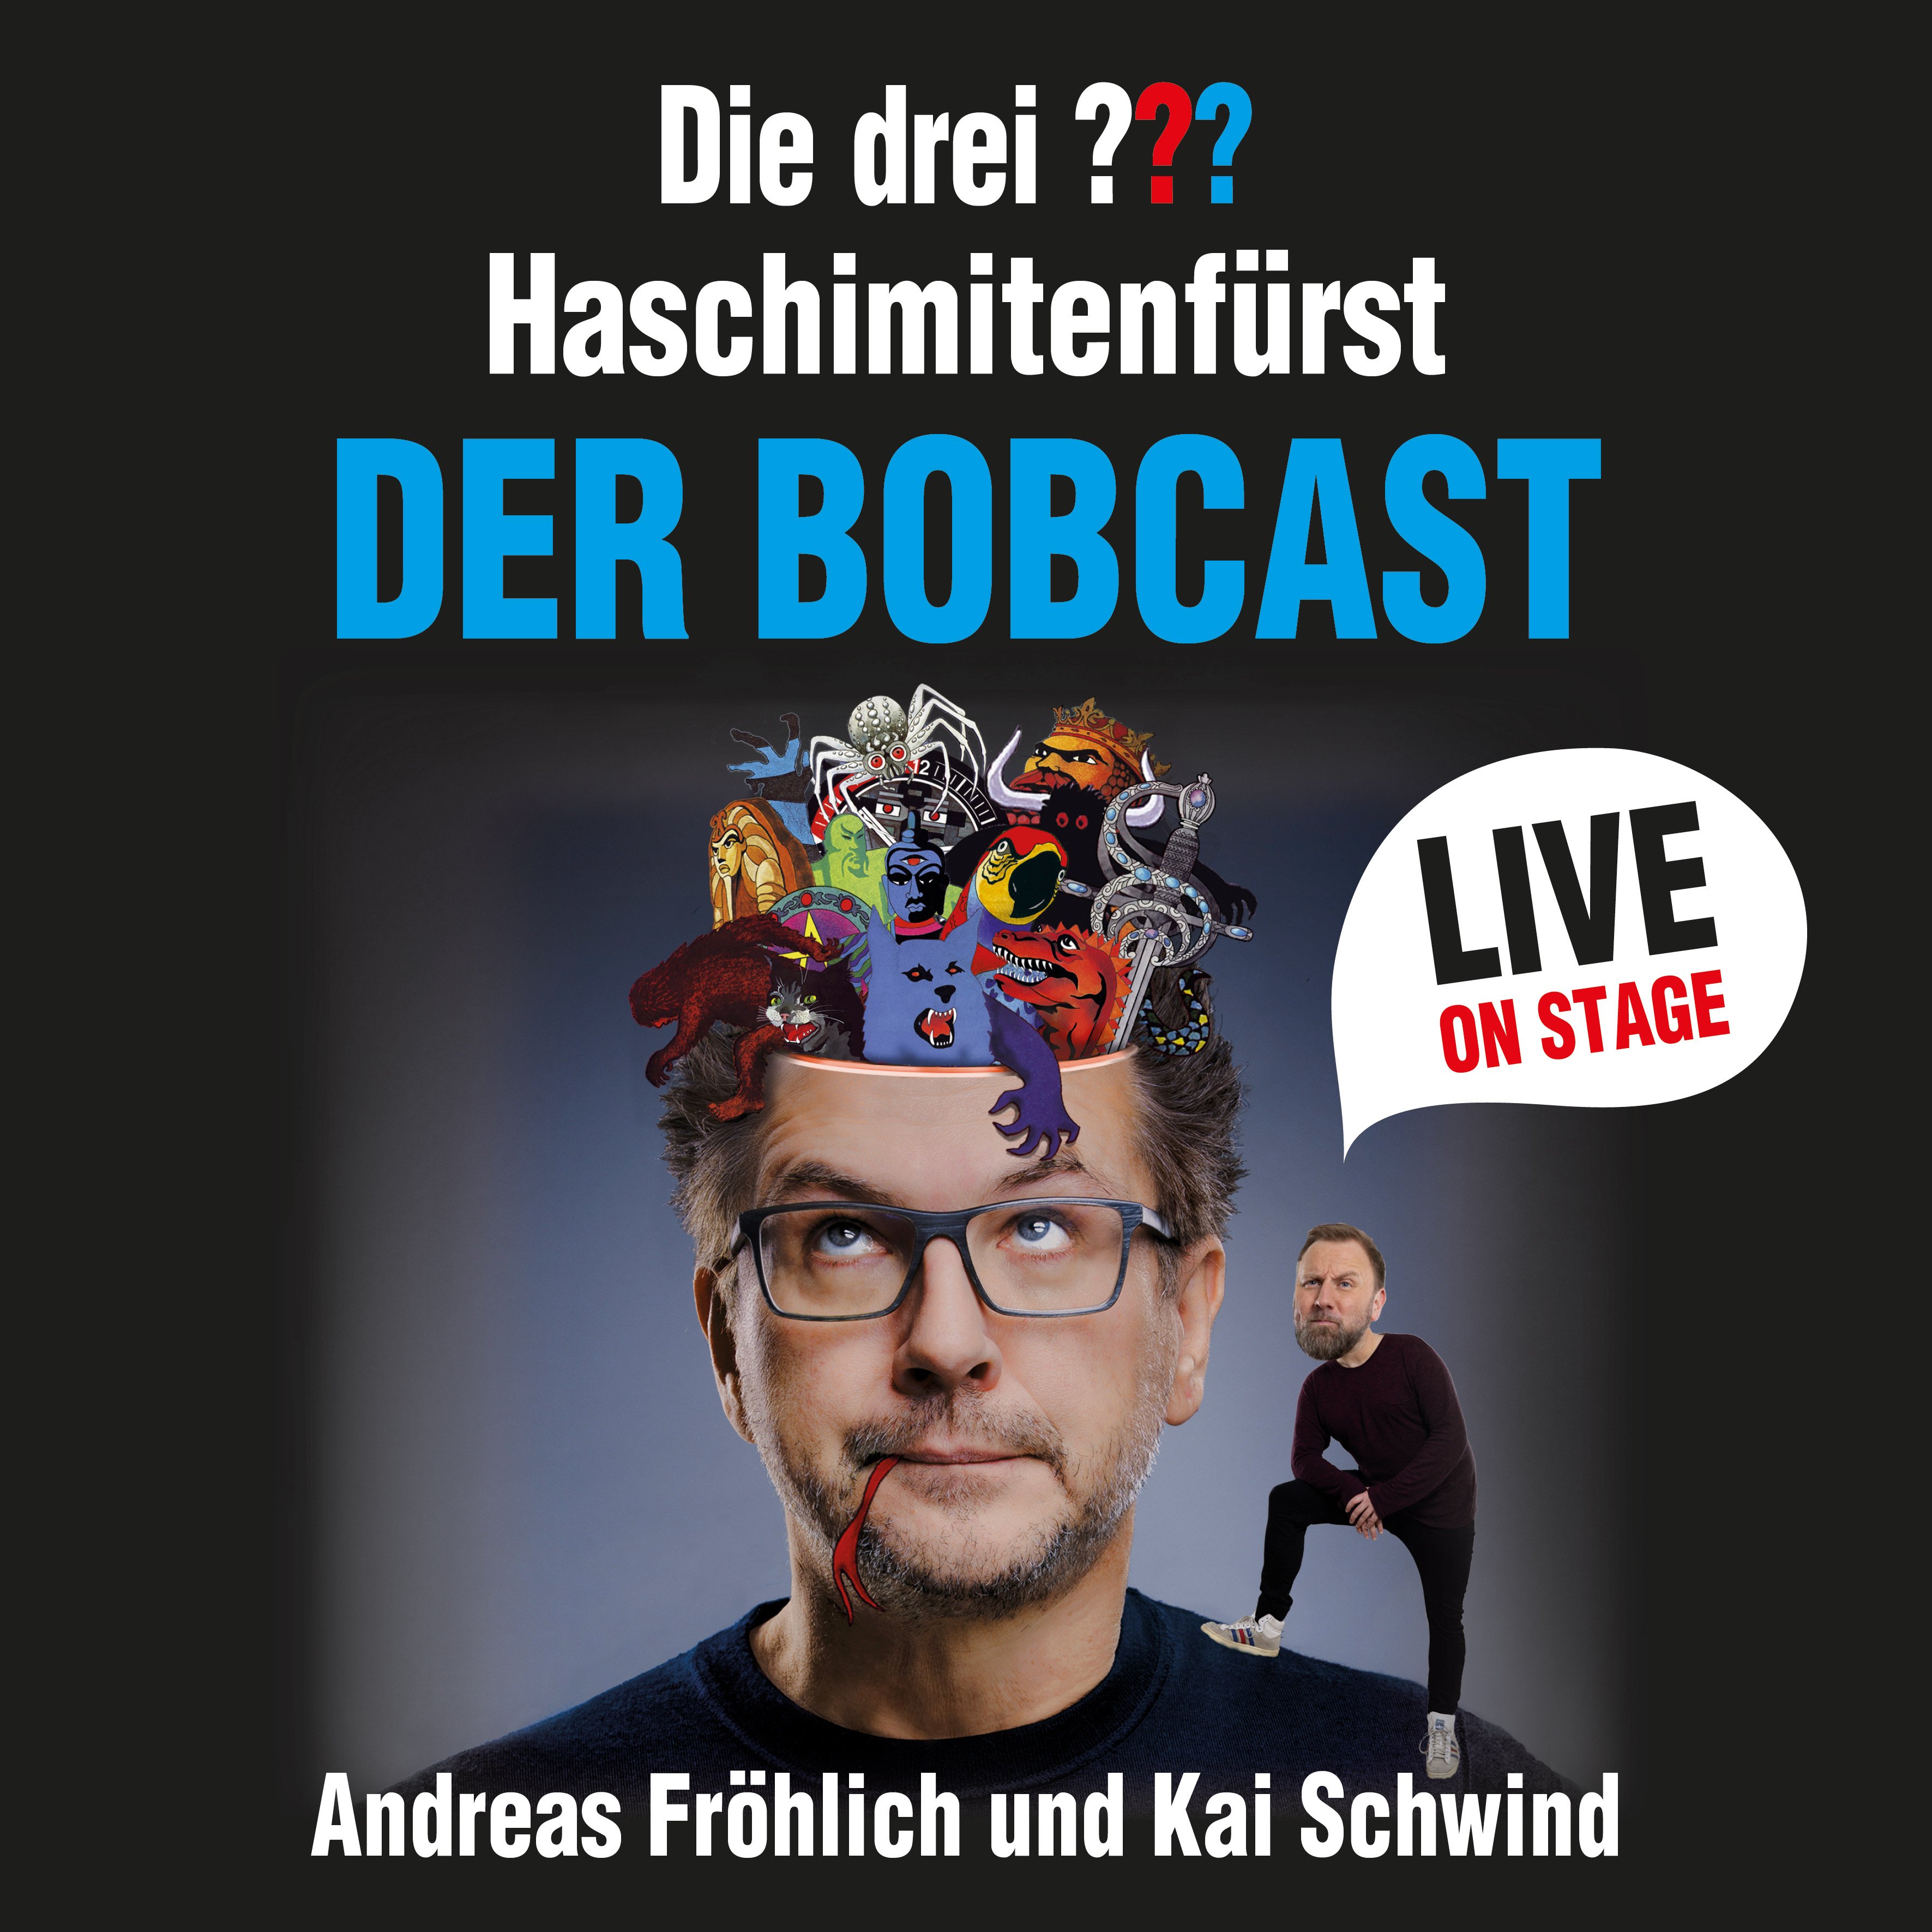 Haschimitenfürst - Der Bobcast LIVE - Das neue Talk-Event über Die drei ??? mit Andreas Fröhlich und Kai Schwind